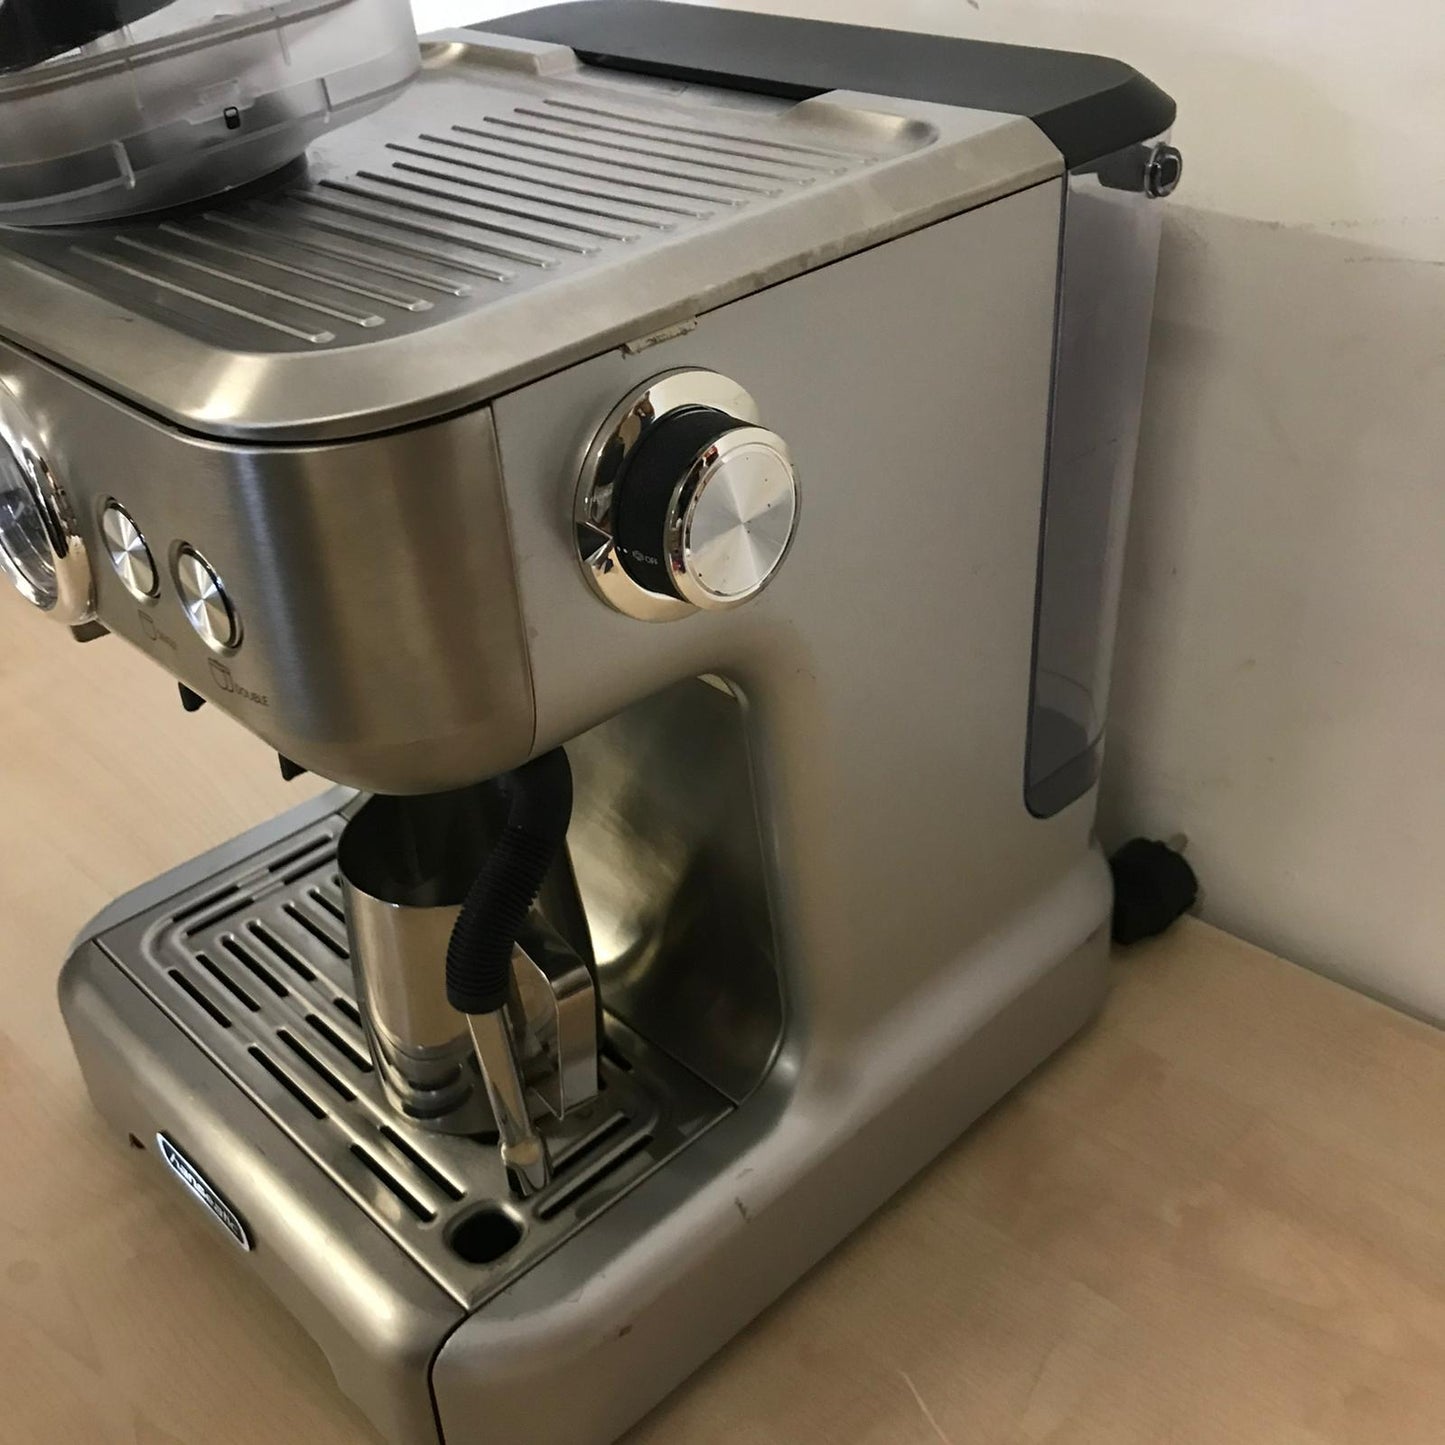 Hanseatic Siebträgermaschine Espressomaschine 71578759, inkl. Edelstahl-Milchkännchen (B-Ware) - GEBRAUCHT